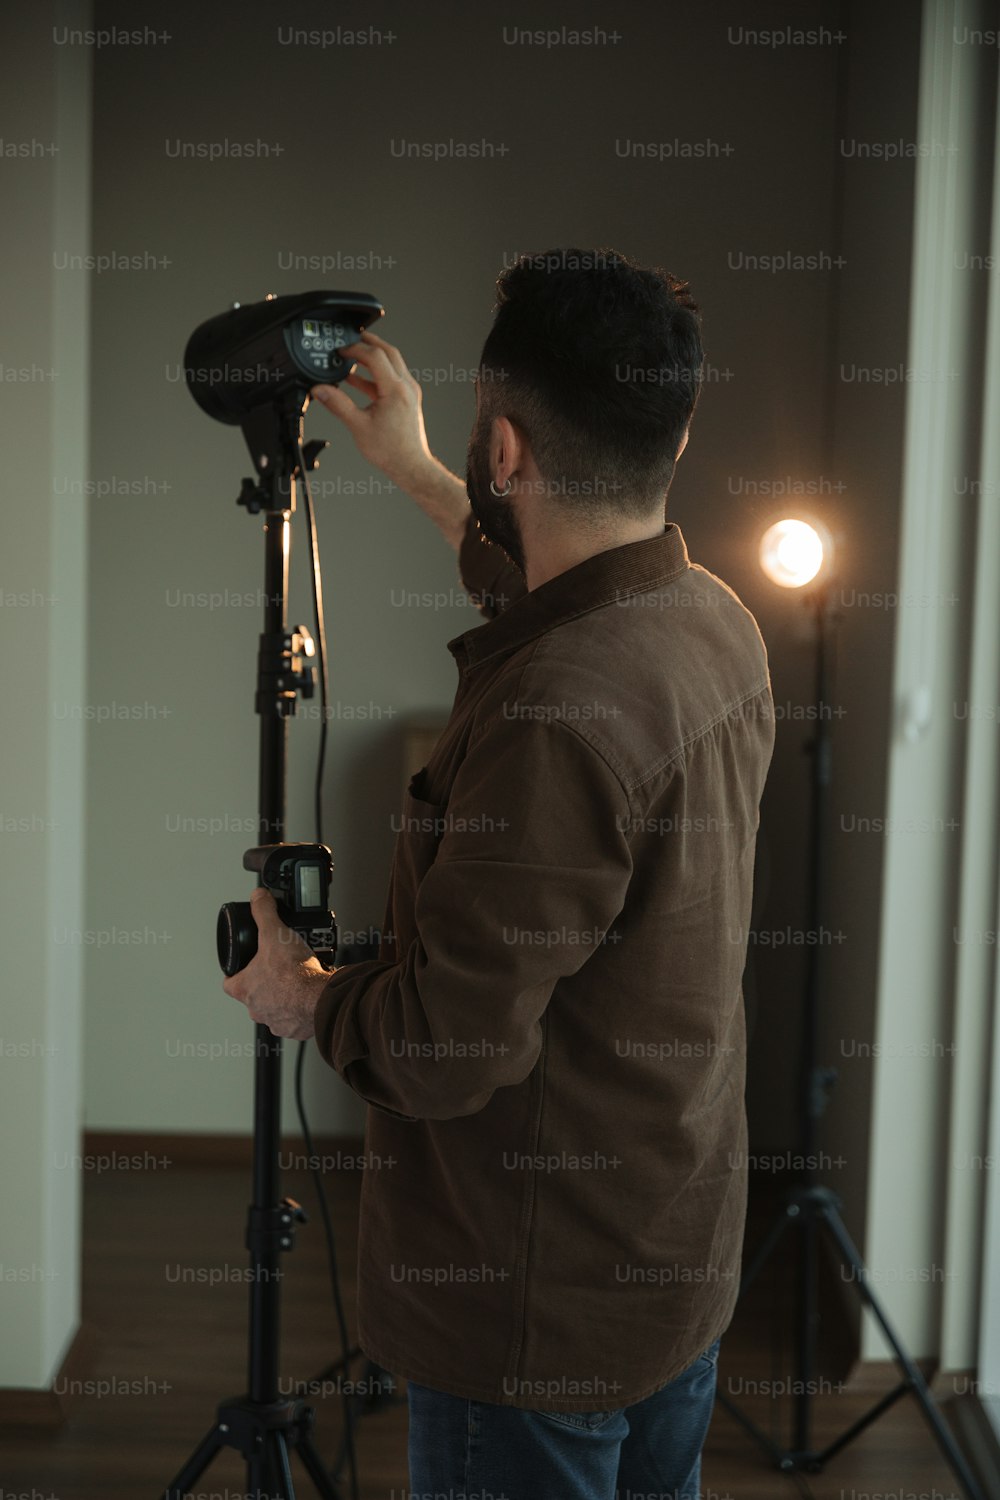 Un homme debout devant un appareil photo sur un trépied